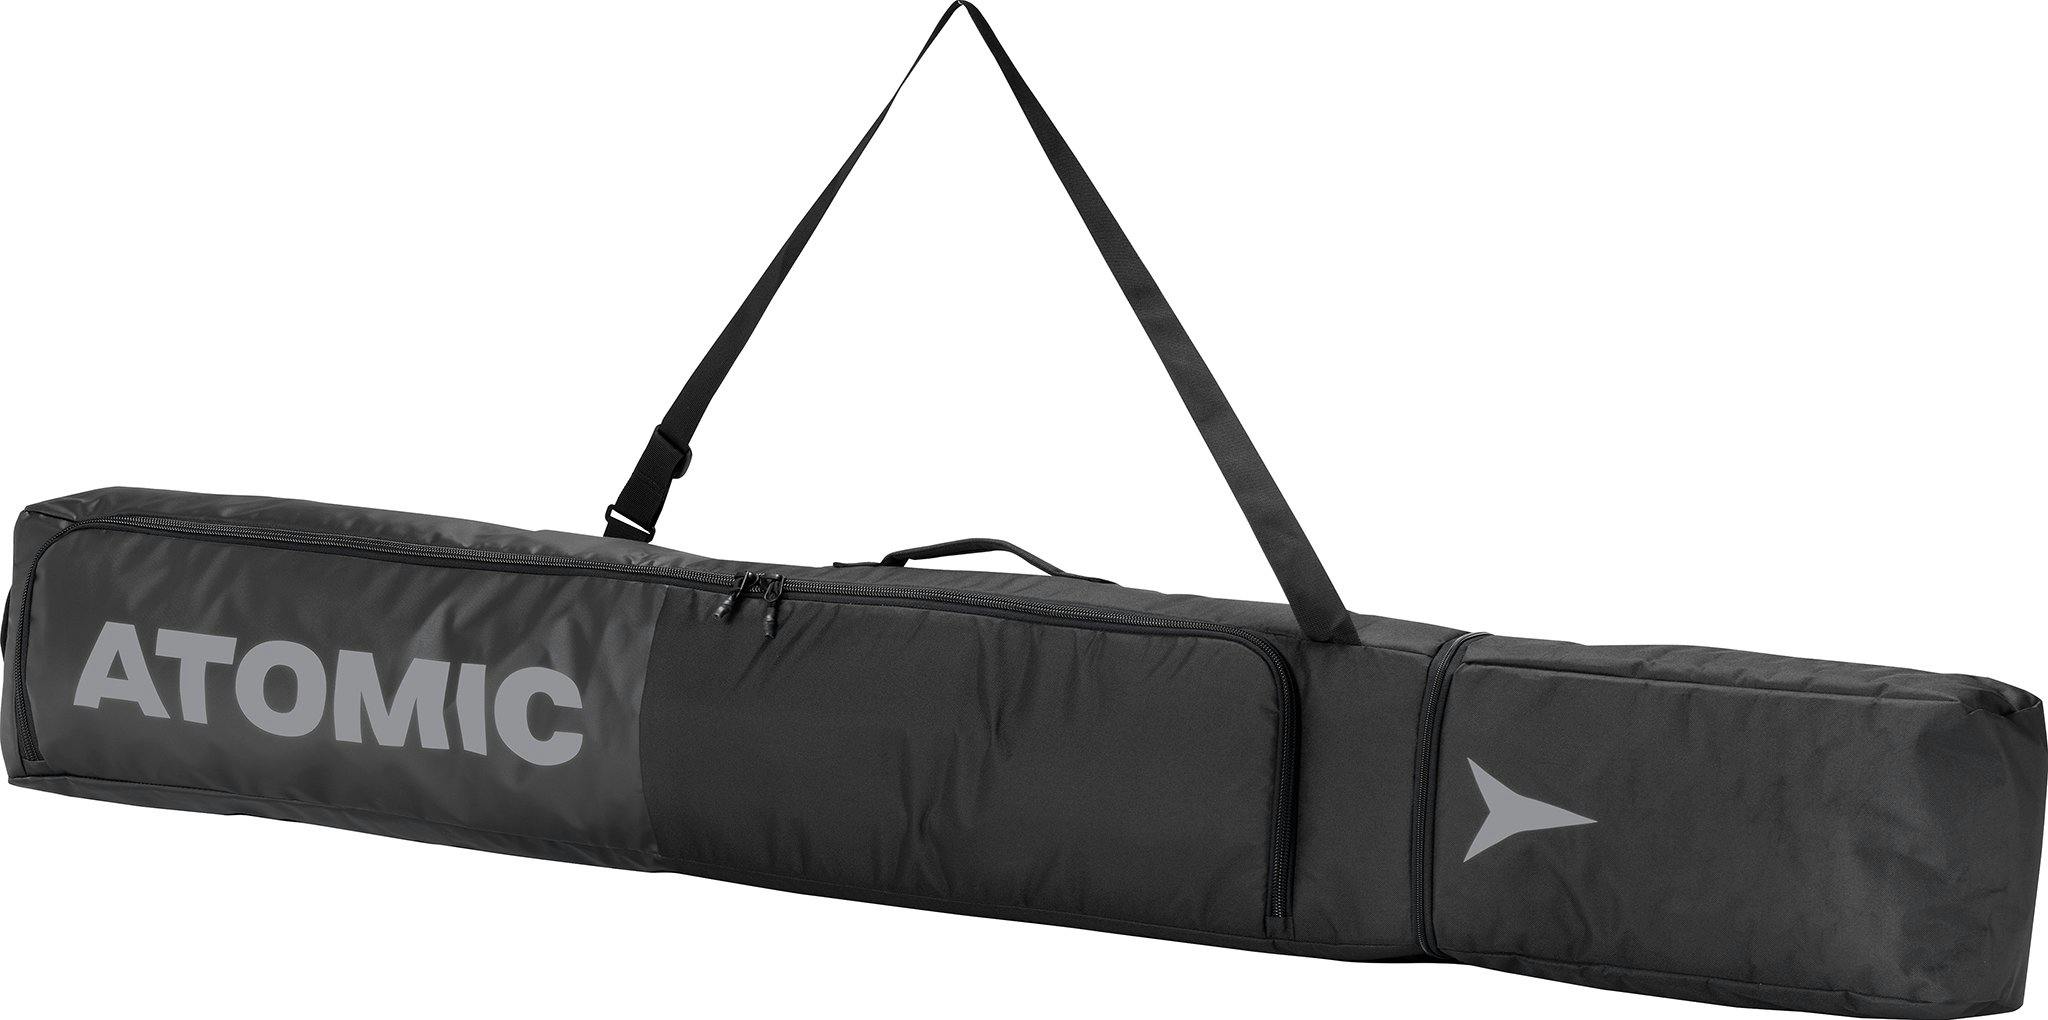 Product image for Ski Bag